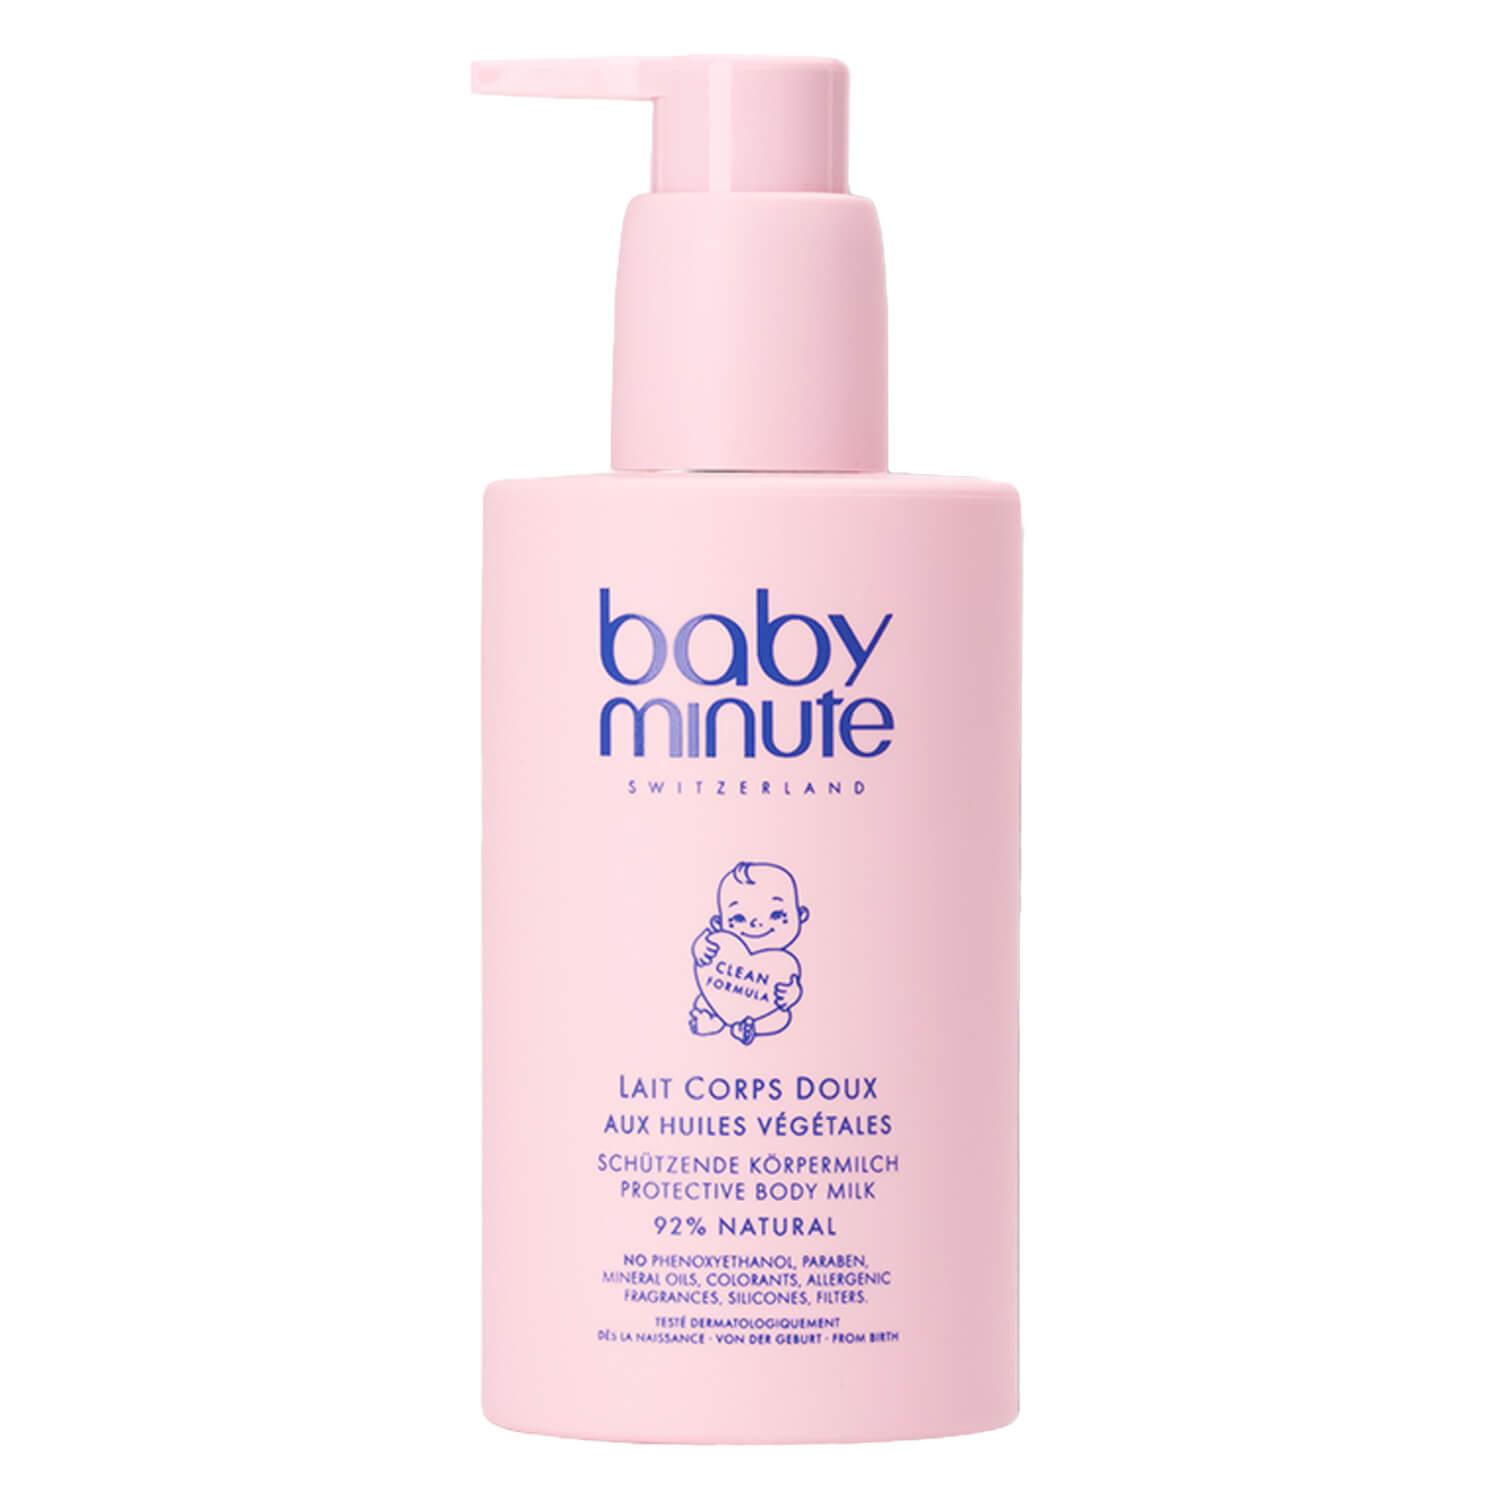 babyminute - Schützende Körpermilch